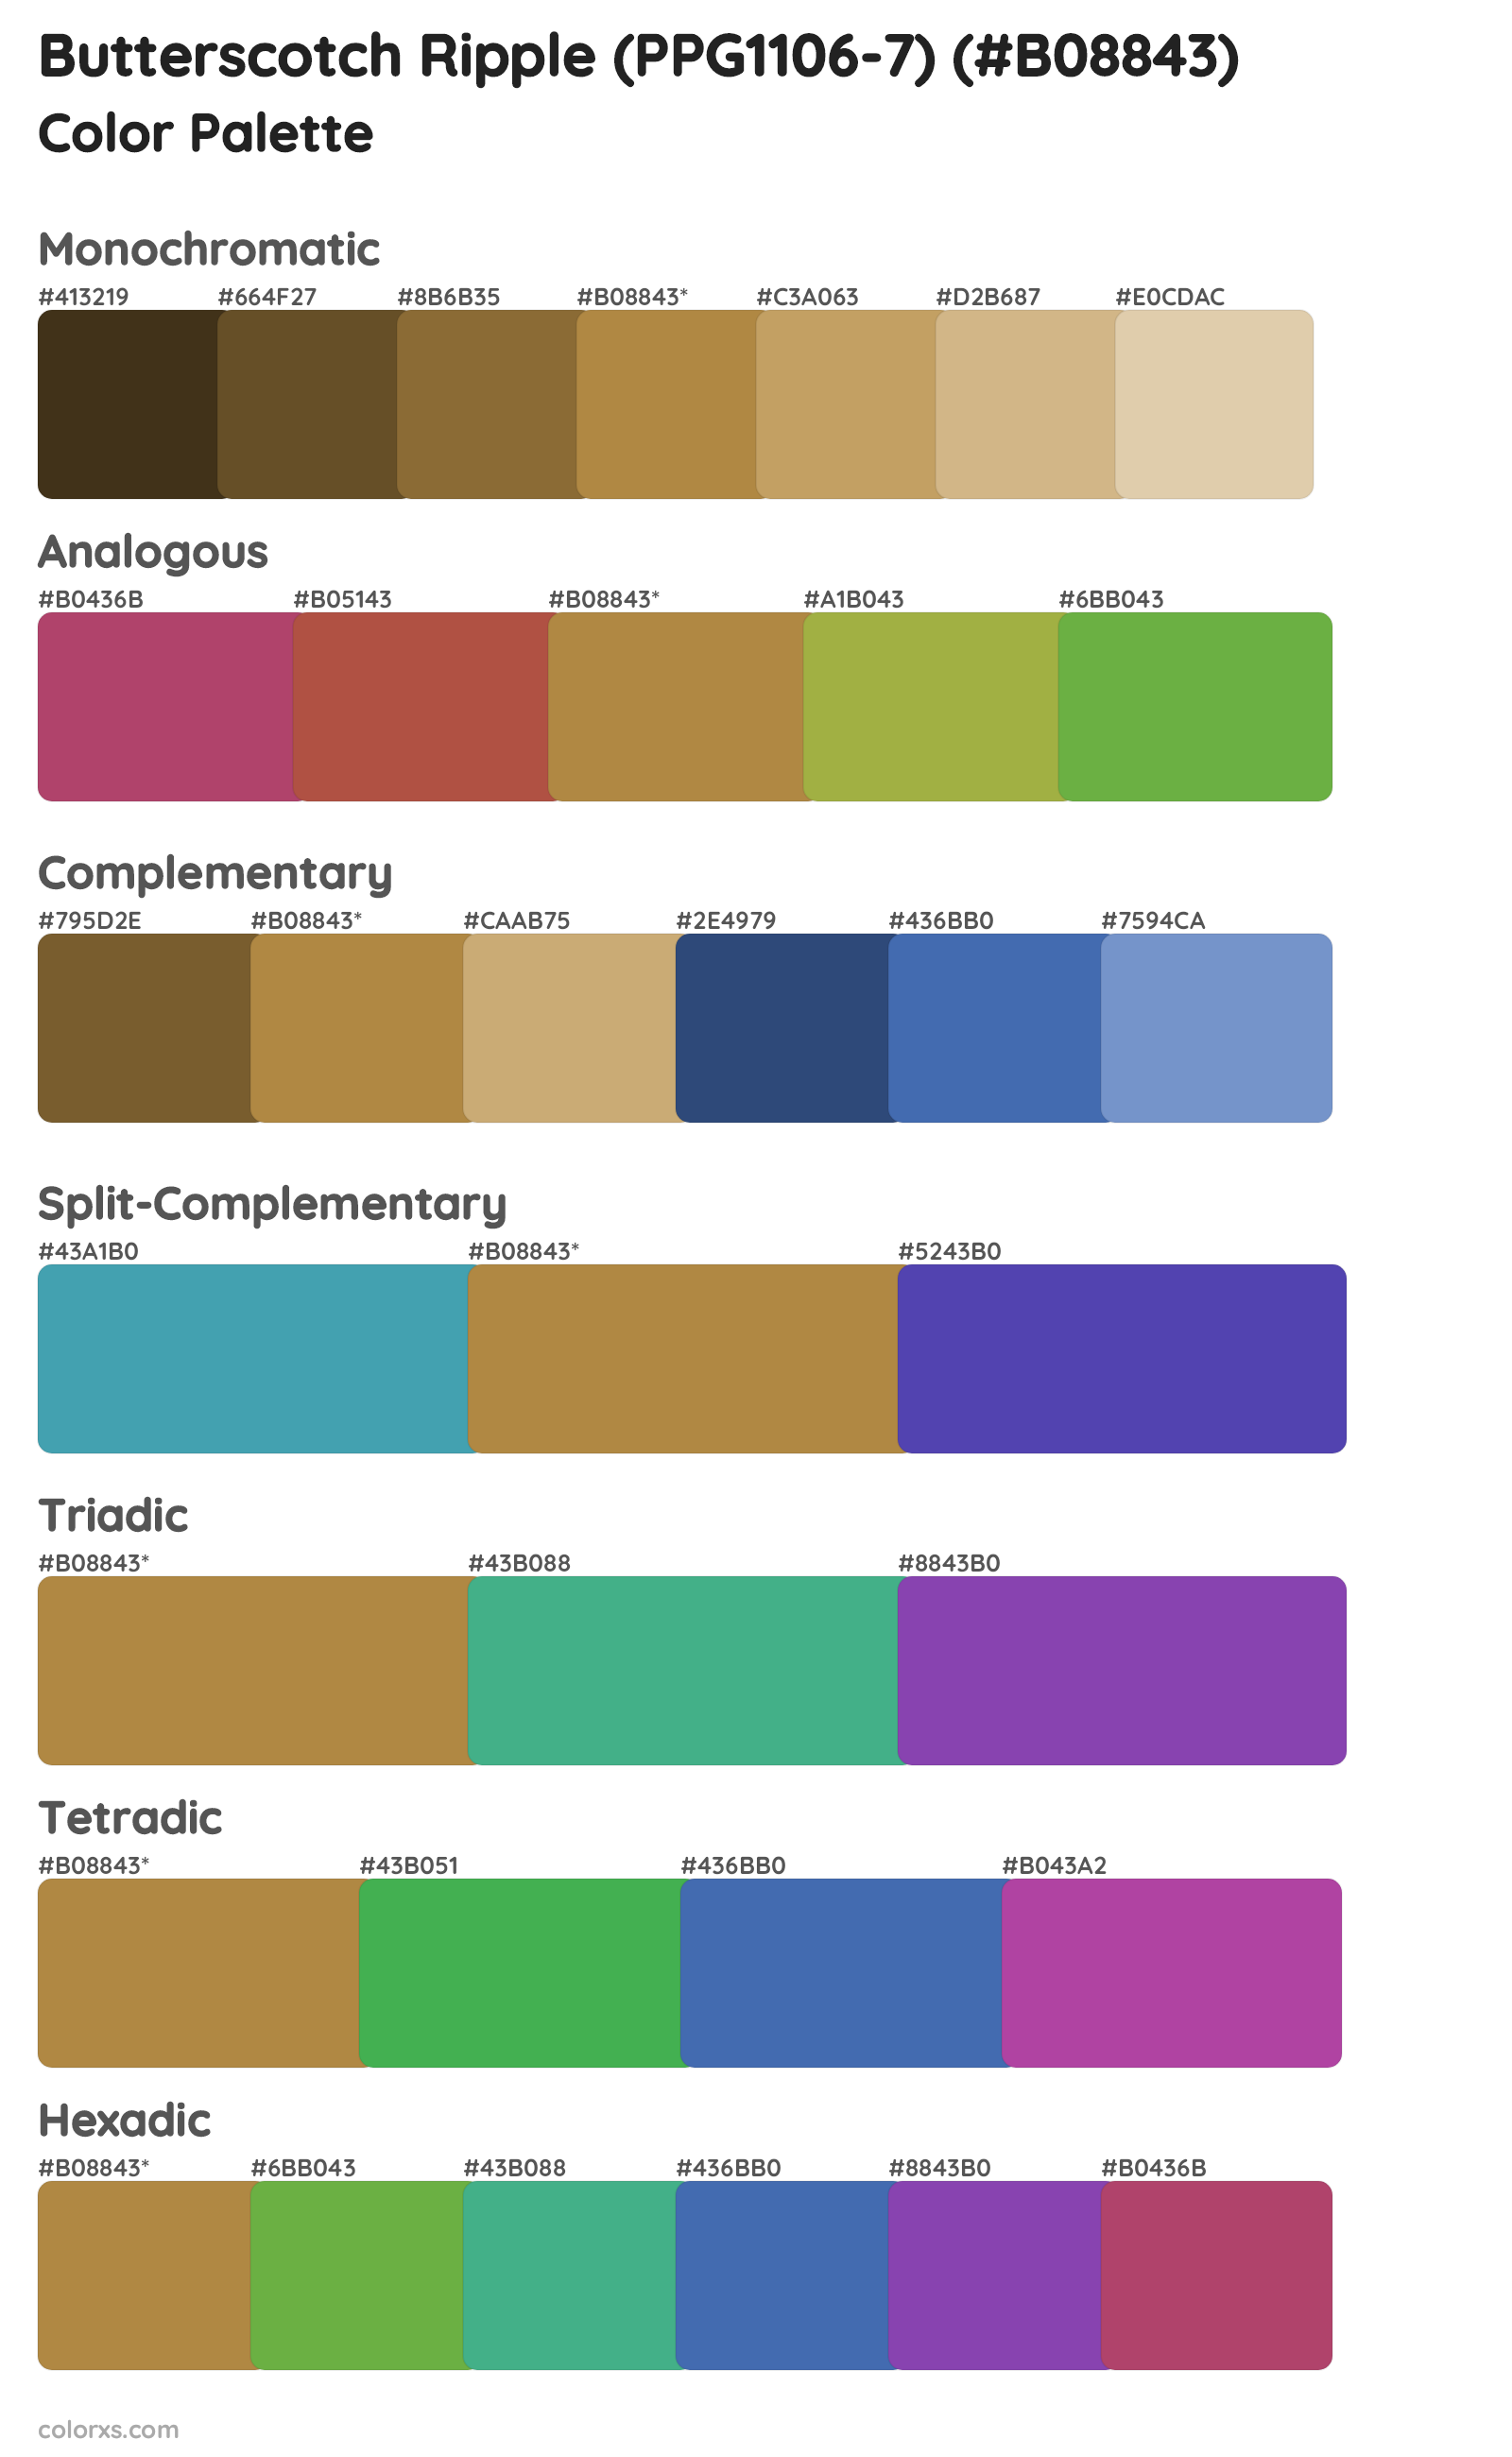 Butterscotch Ripple (PPG1106-7) Color Scheme Palettes